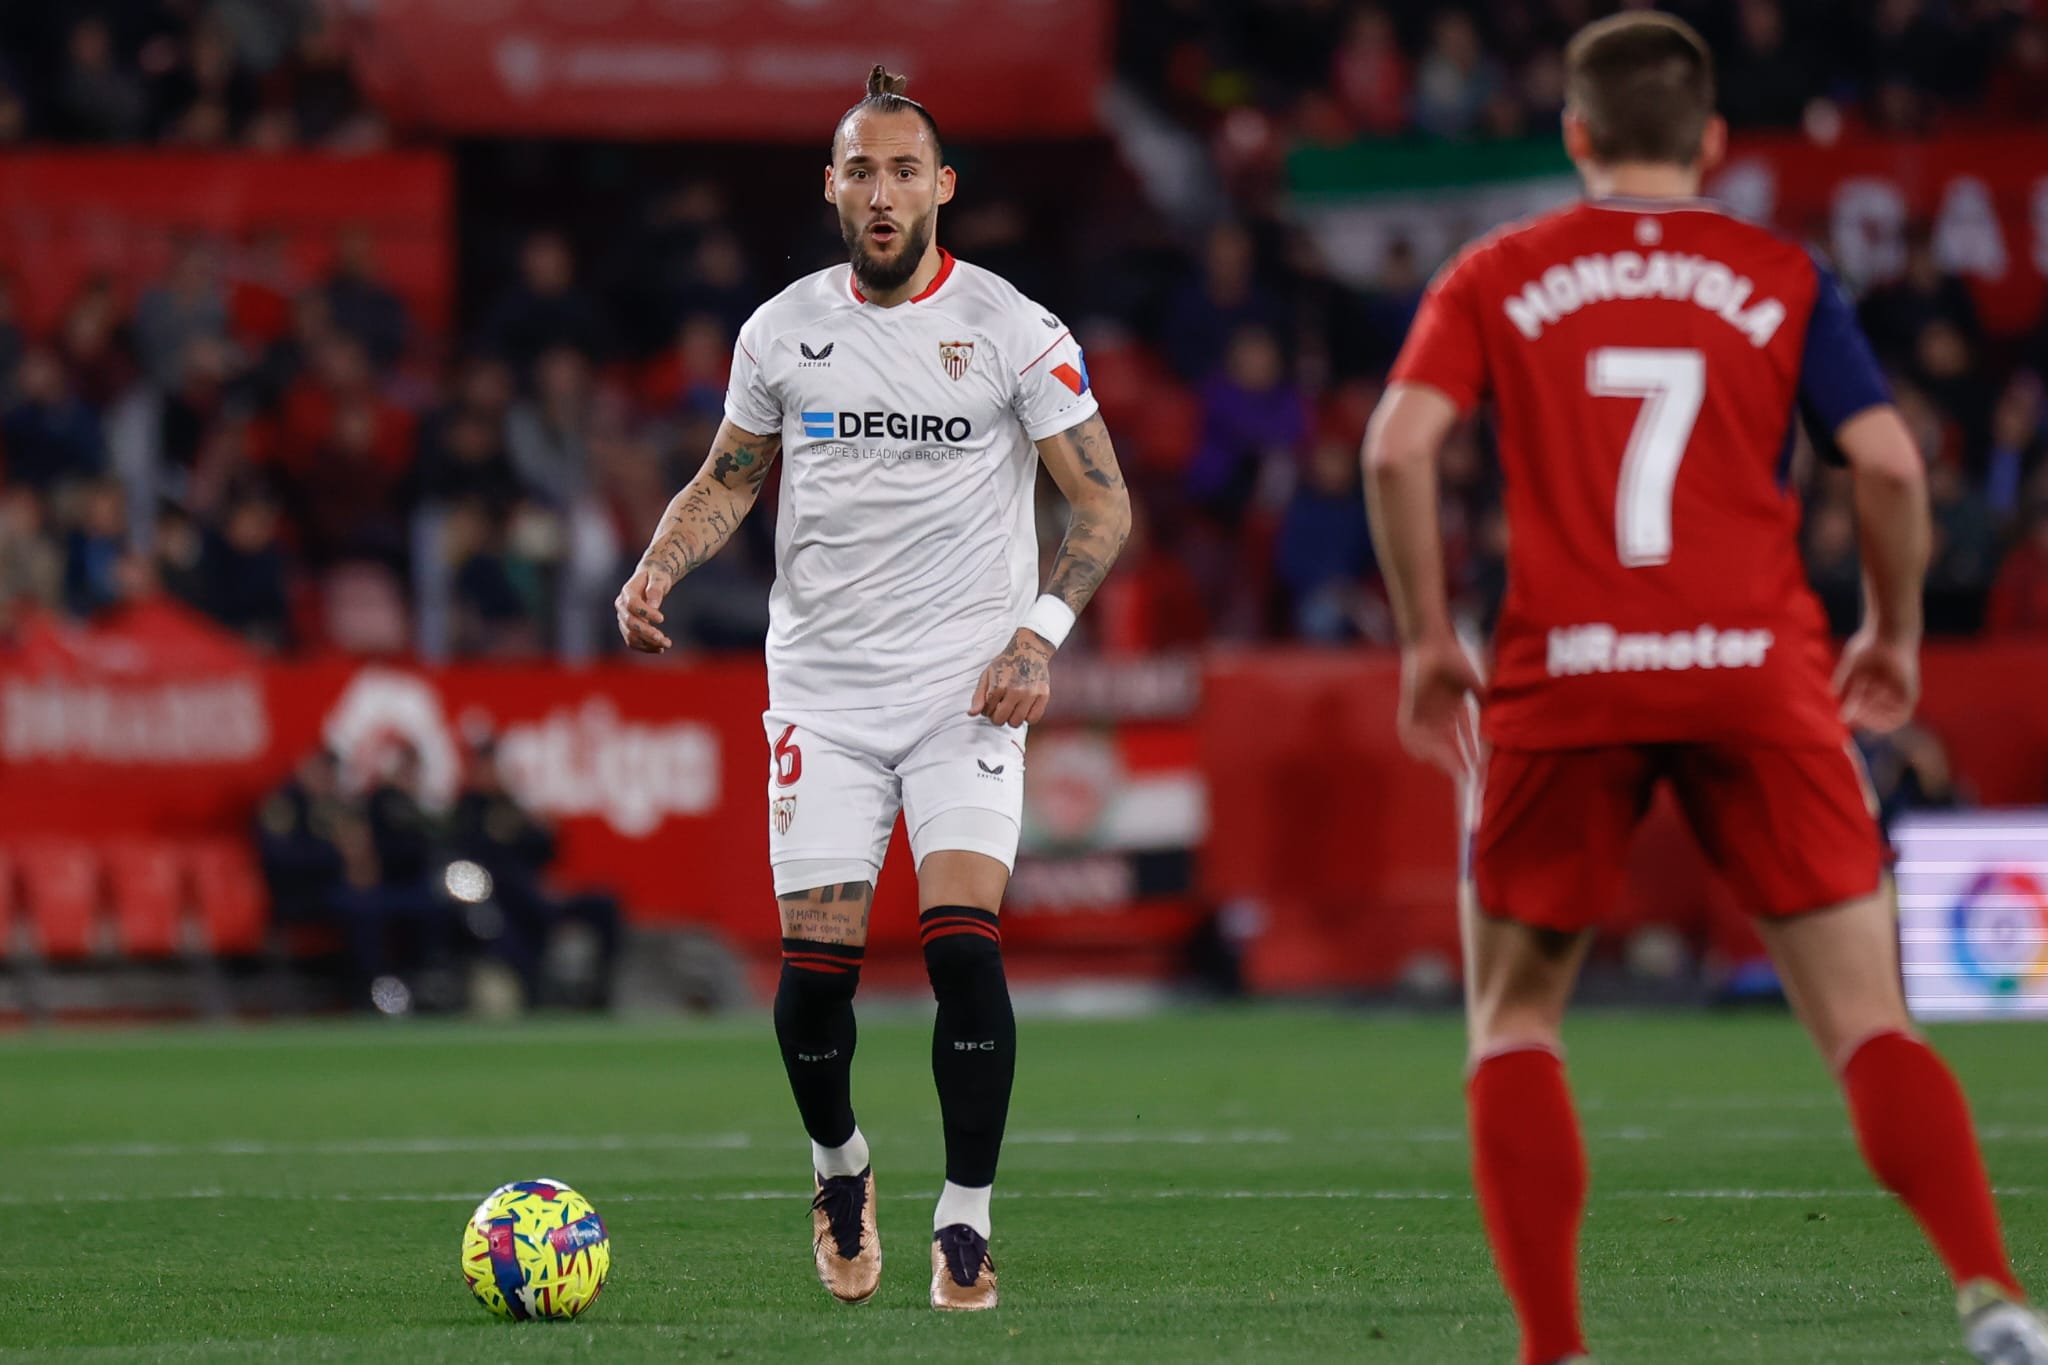 Gudelj in action for Sevilla FC